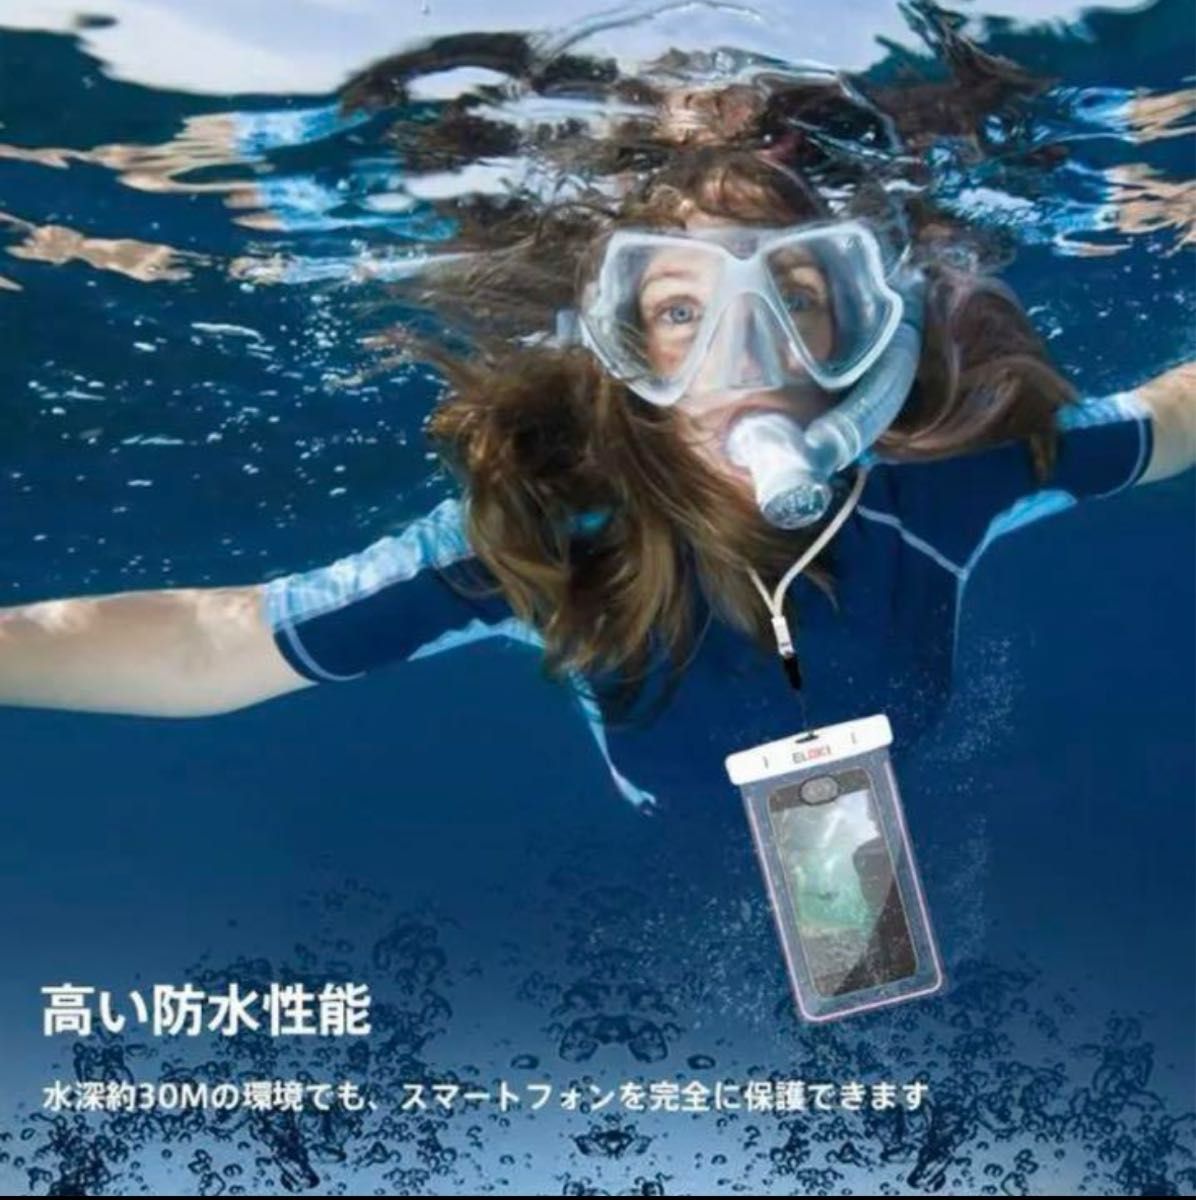 防水ケーススマホ用2本入iPhone Android IPX8認定携帯防水ケース